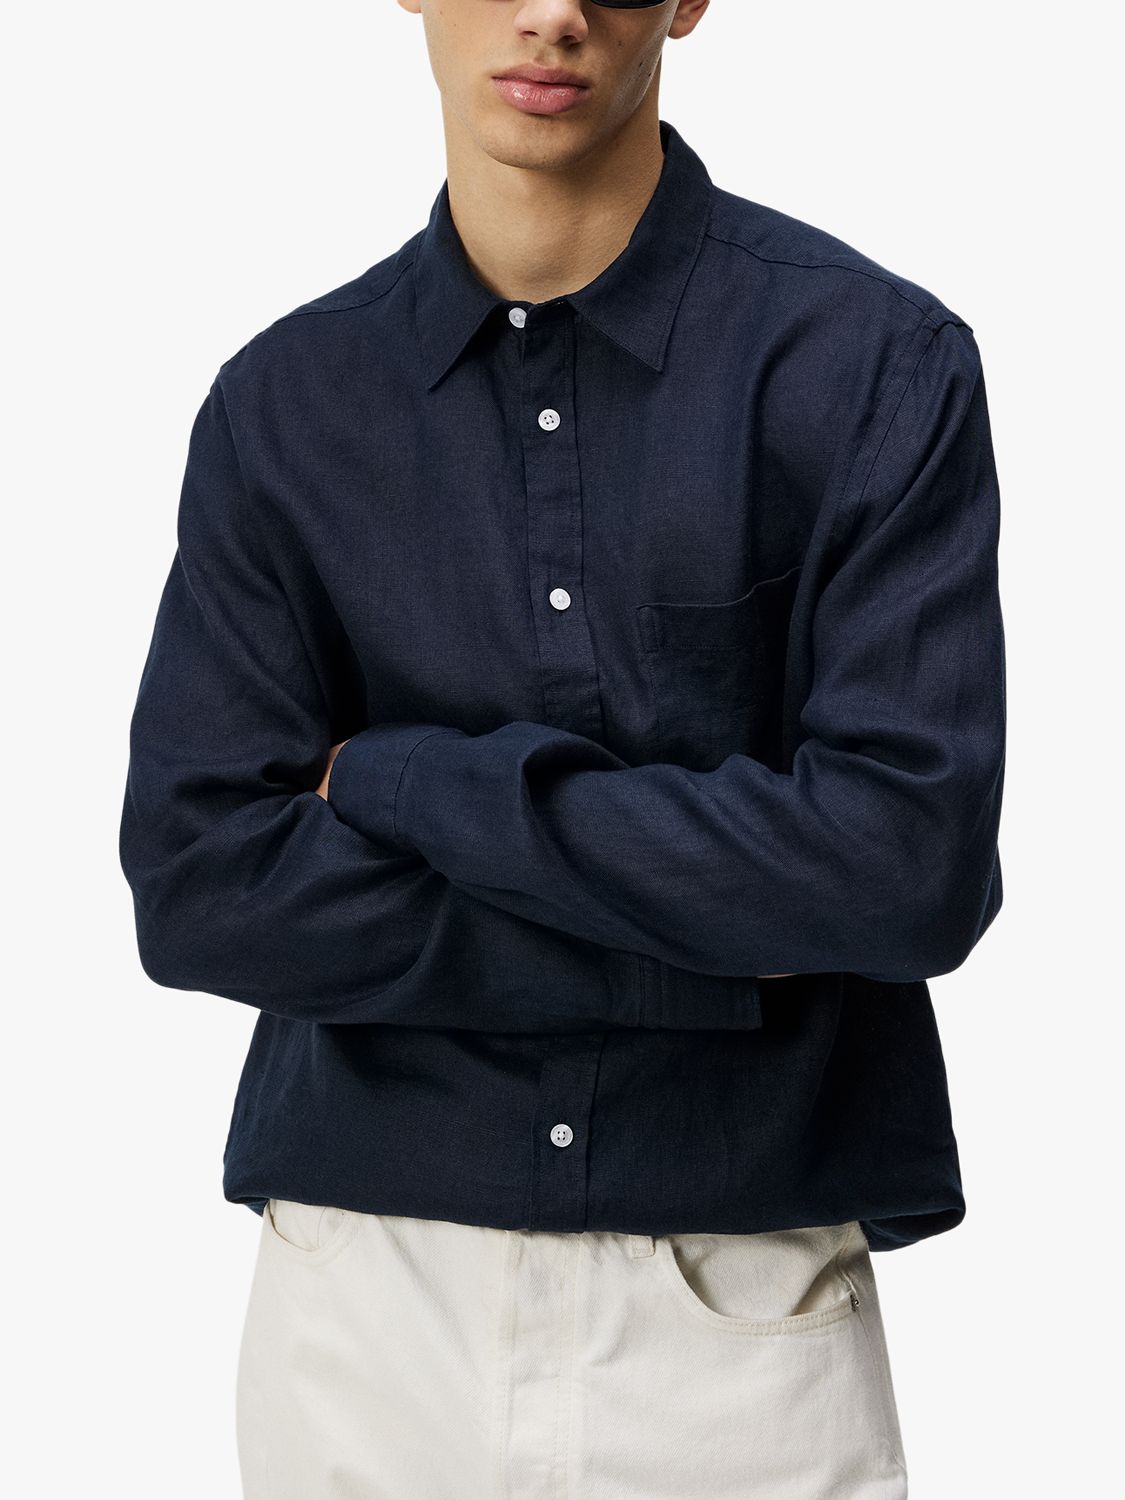 J.Lindeberg Regular Fit Long Sleeve Linen Shirt, Navy, M